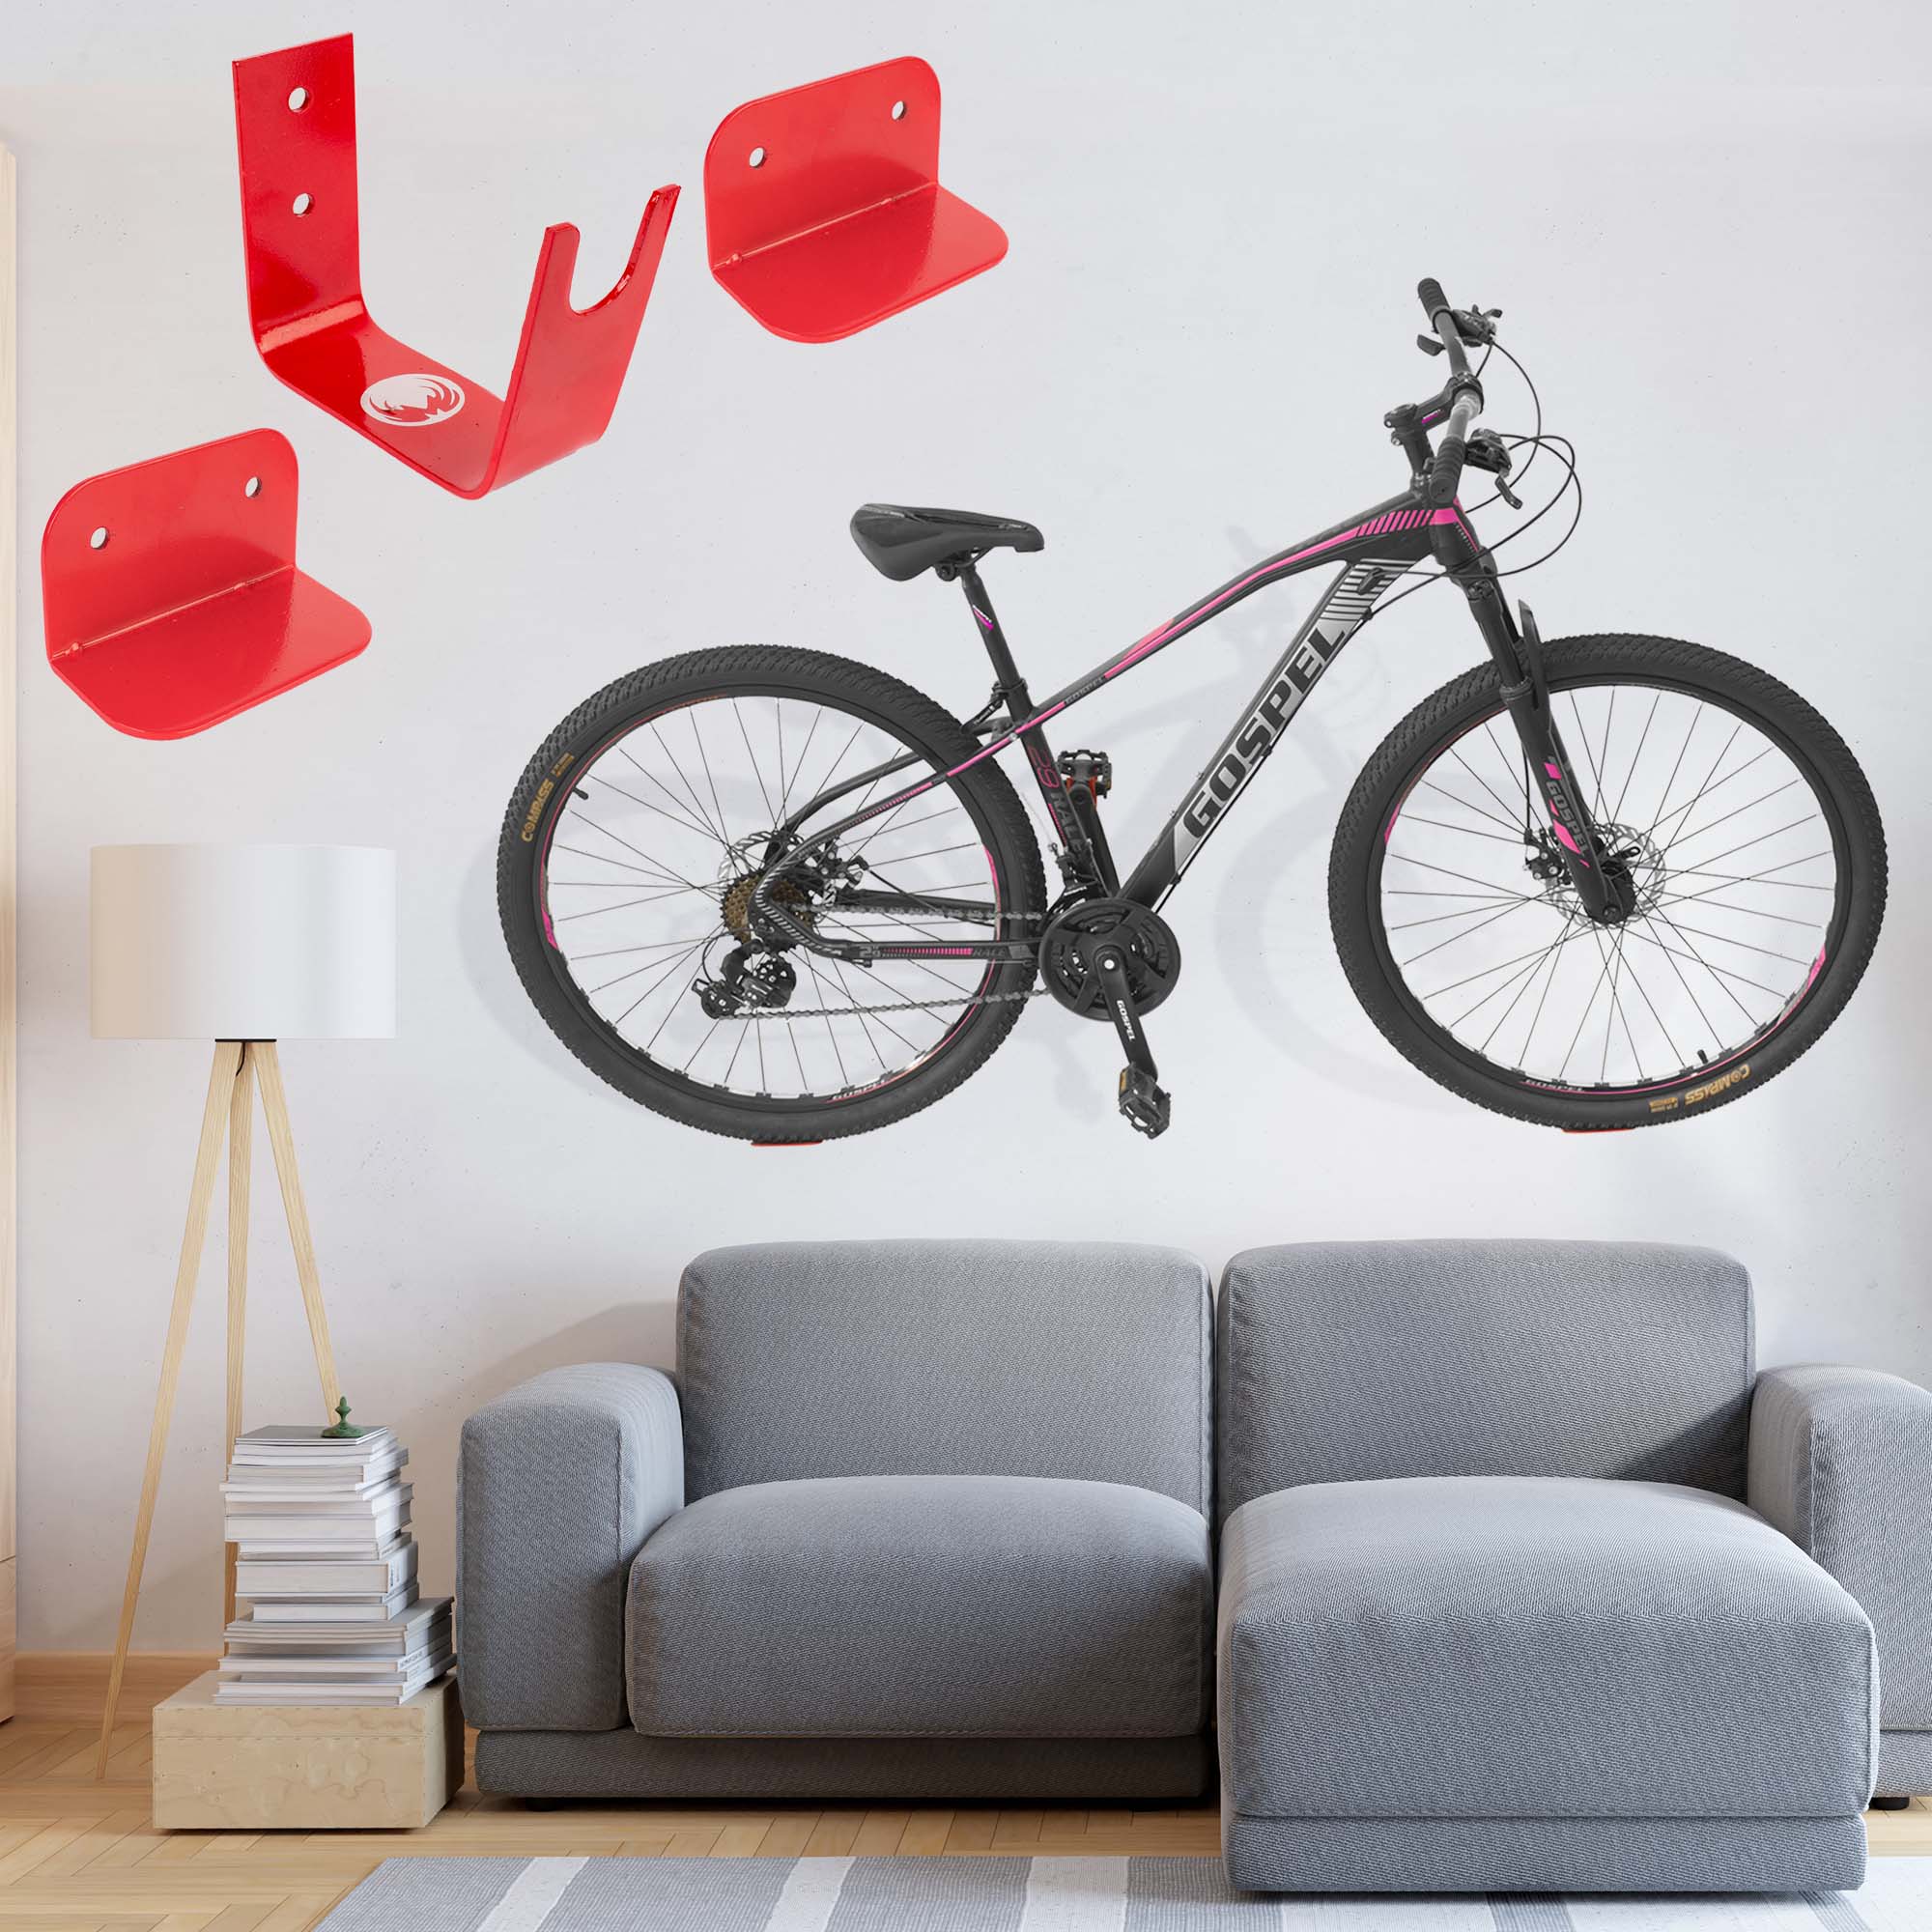 Ciclometa Detalles Soporte de pedal para colgar bicicleta en la pared Mach  rojo